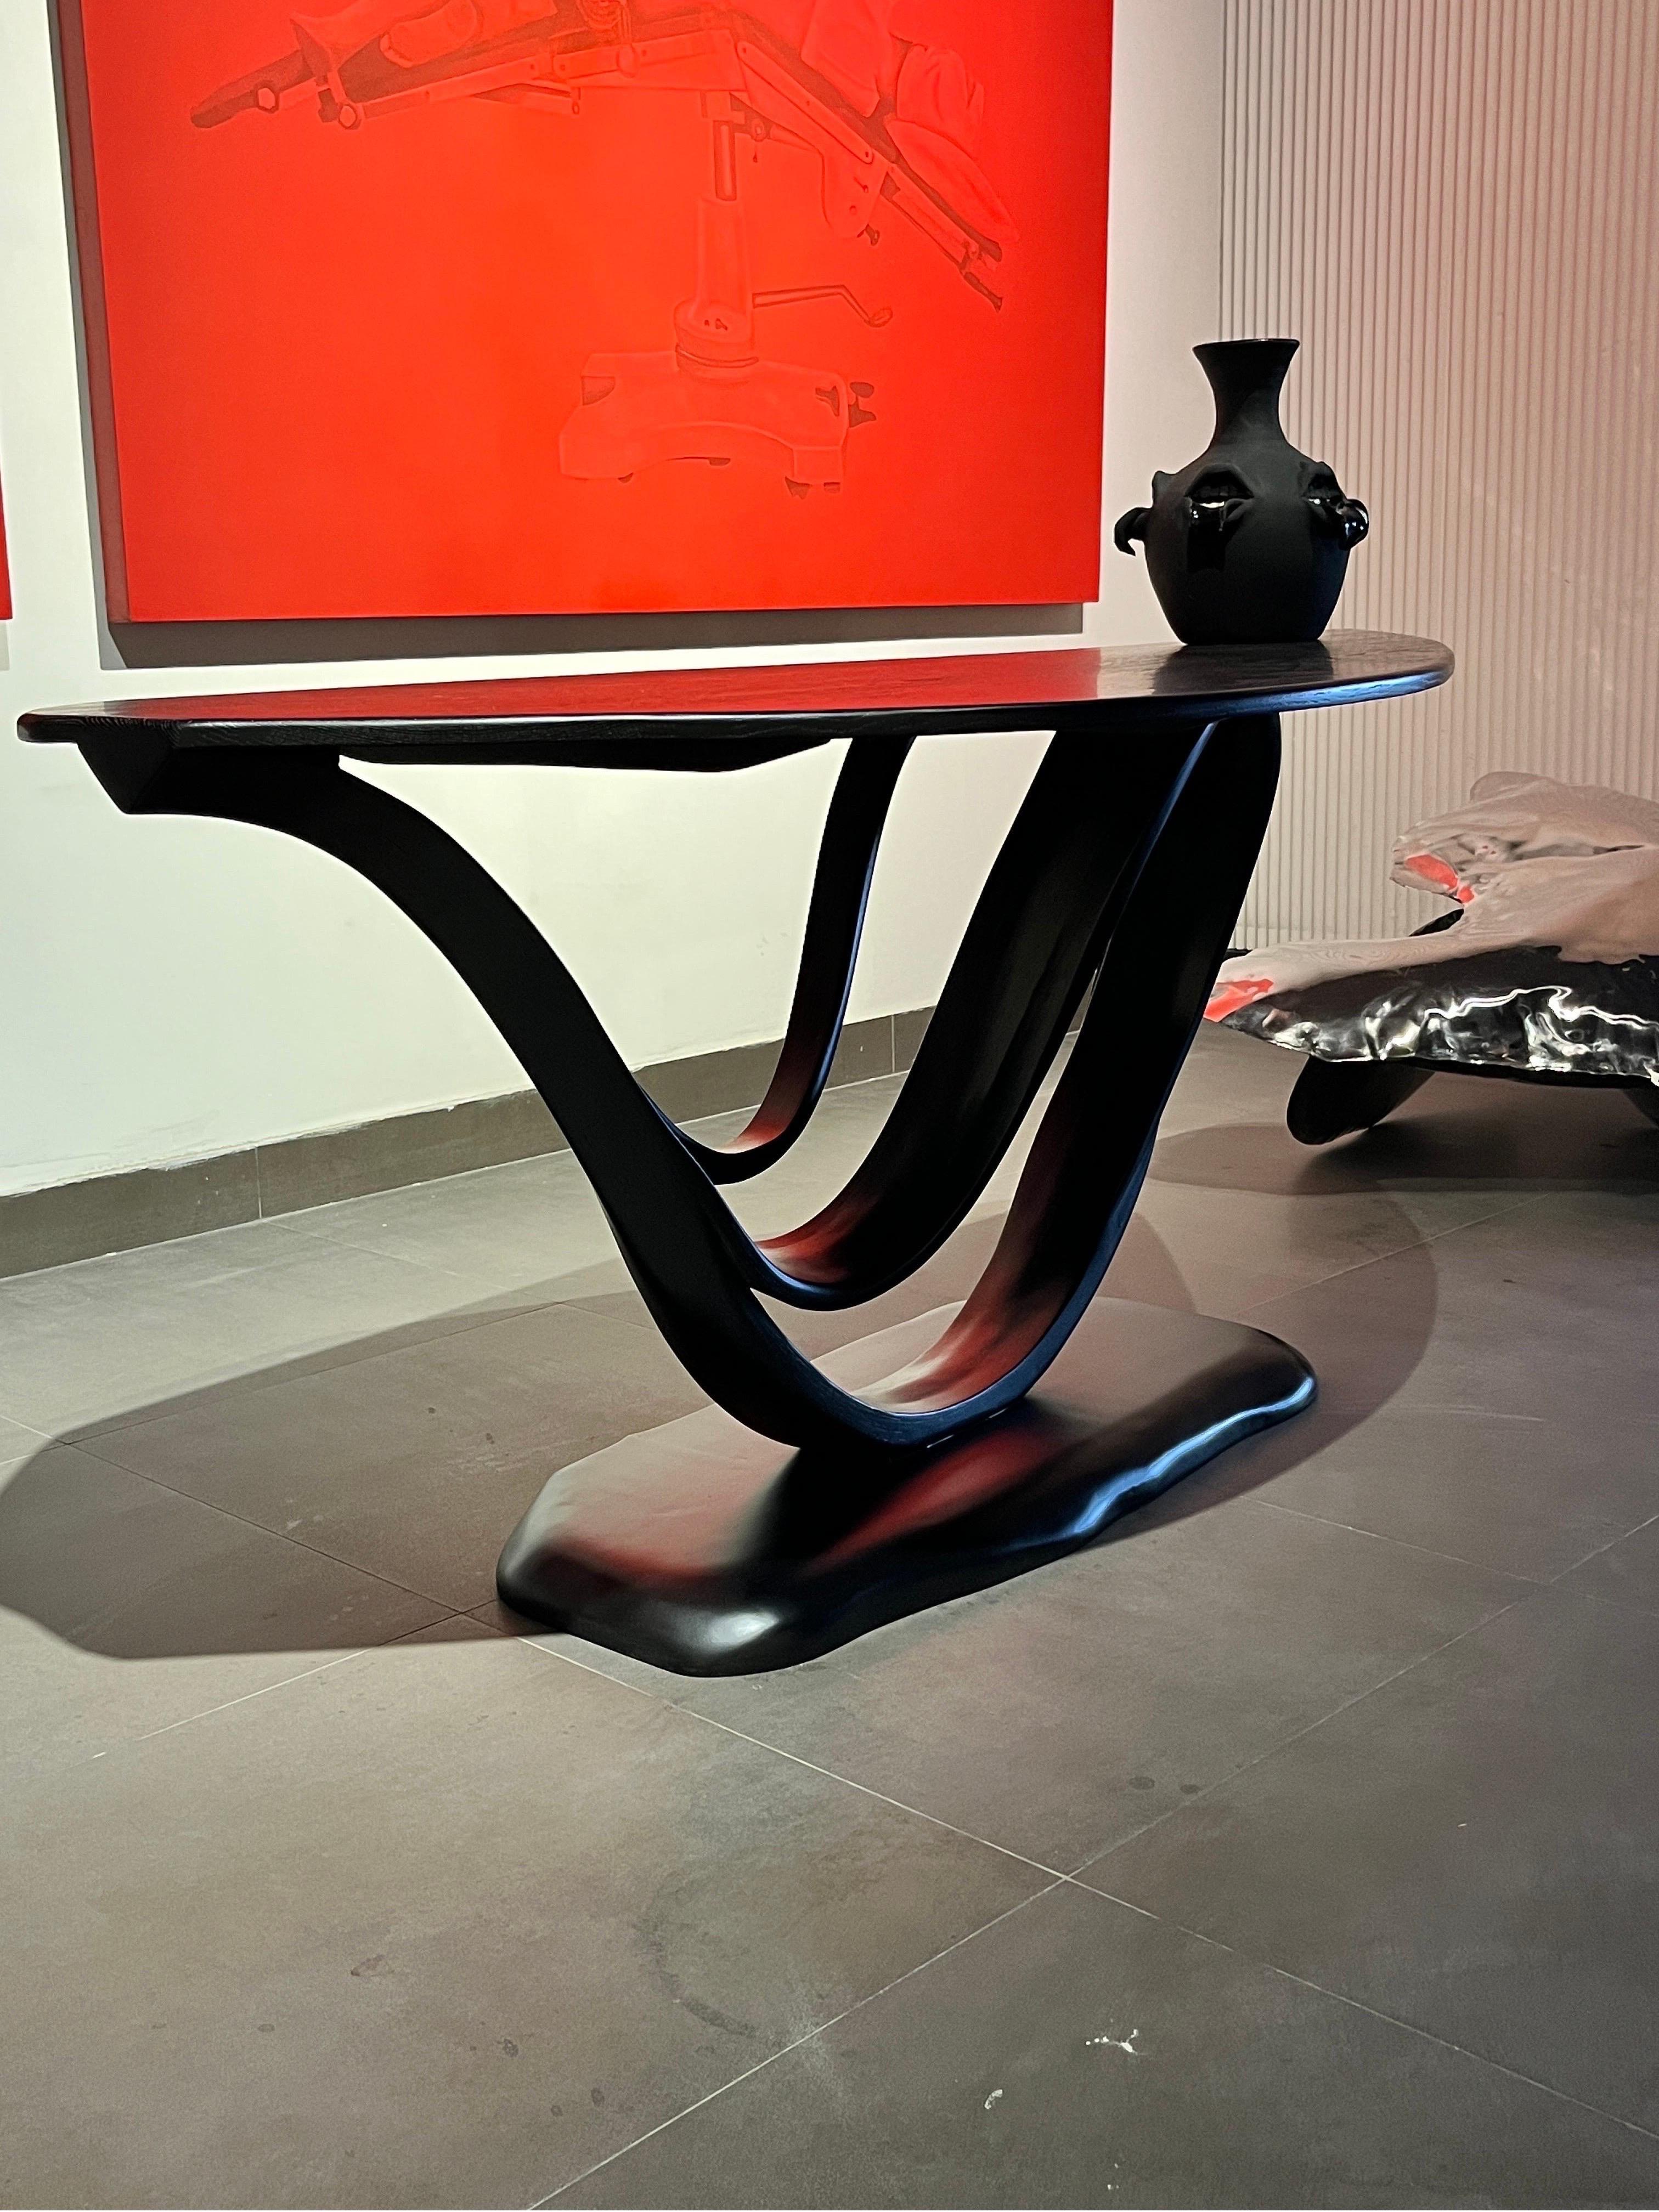 Il s'agit du bureau de travail n° 1 de la série Fluentum du Studio.

La construction de la table est un design épuré, mettant en valeur les détails et les flux d'un design en bois courbé. Le bois émerge doucement de la structure pour créer un flux